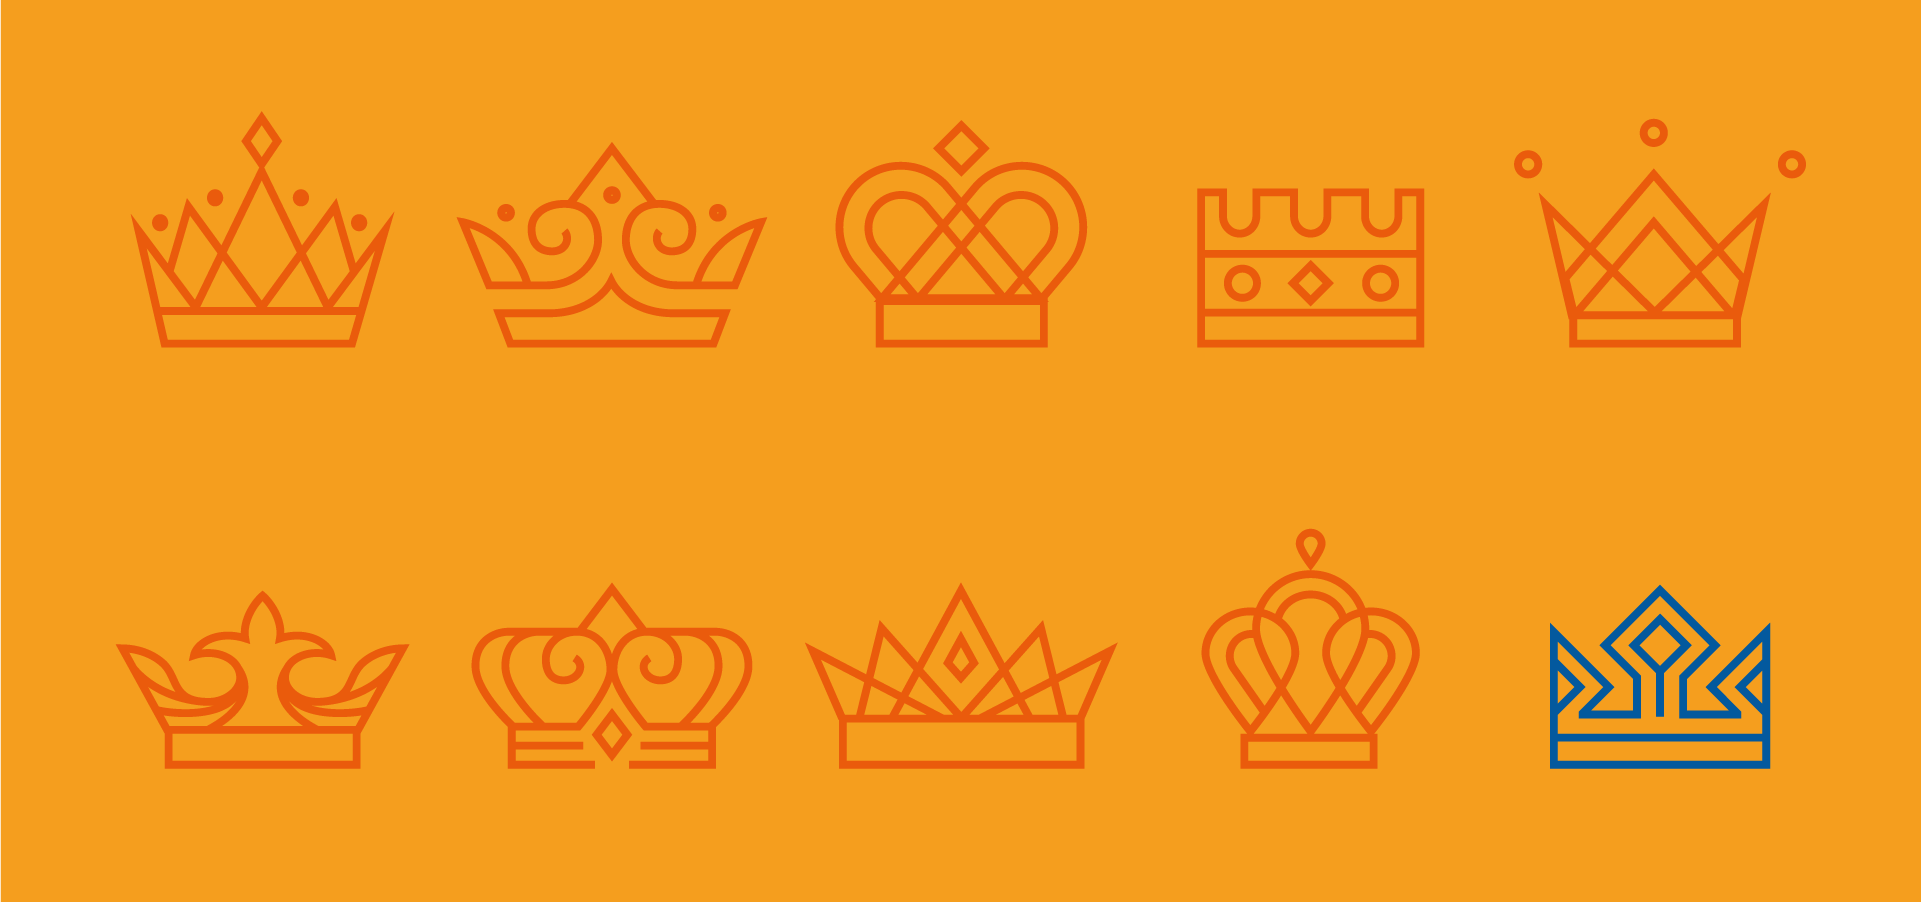 Arte em fundo amarelo mostrando vários desenhos de coroas vermelhas e uma coroa azul